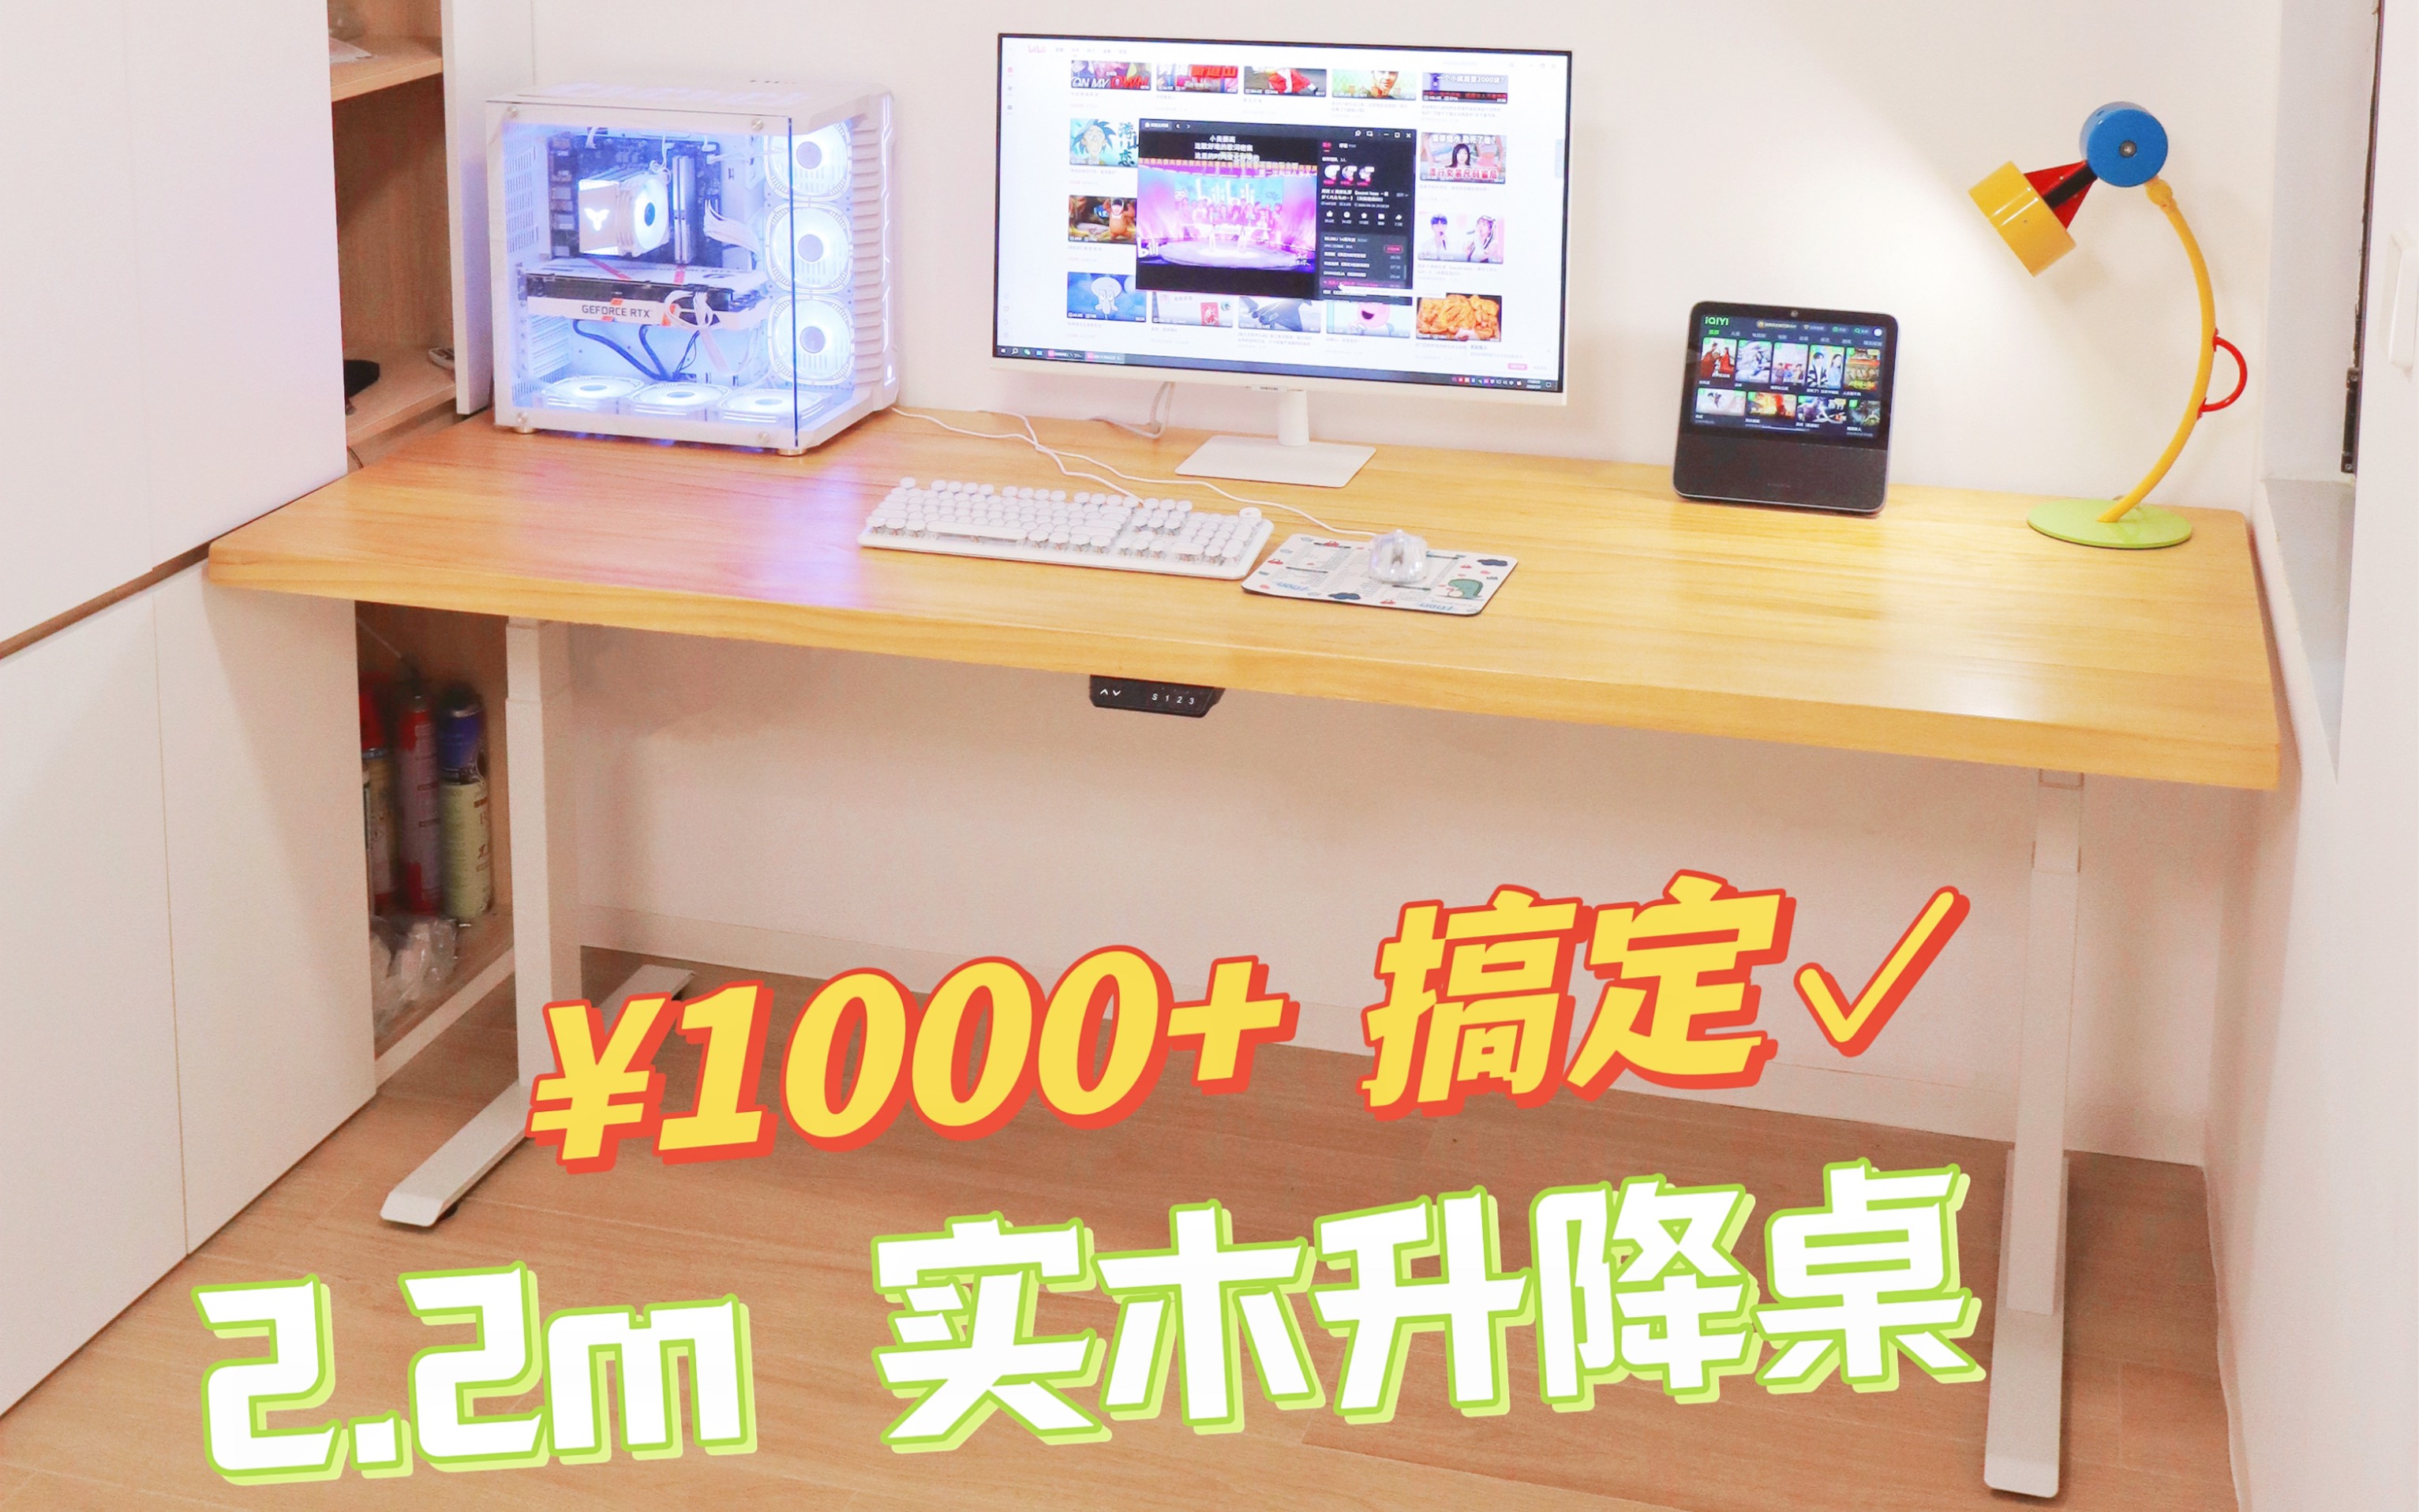 不是成品桌买不起，是分开买更有性价比！¥1000+搞定！2.2米长顶配升降桌！